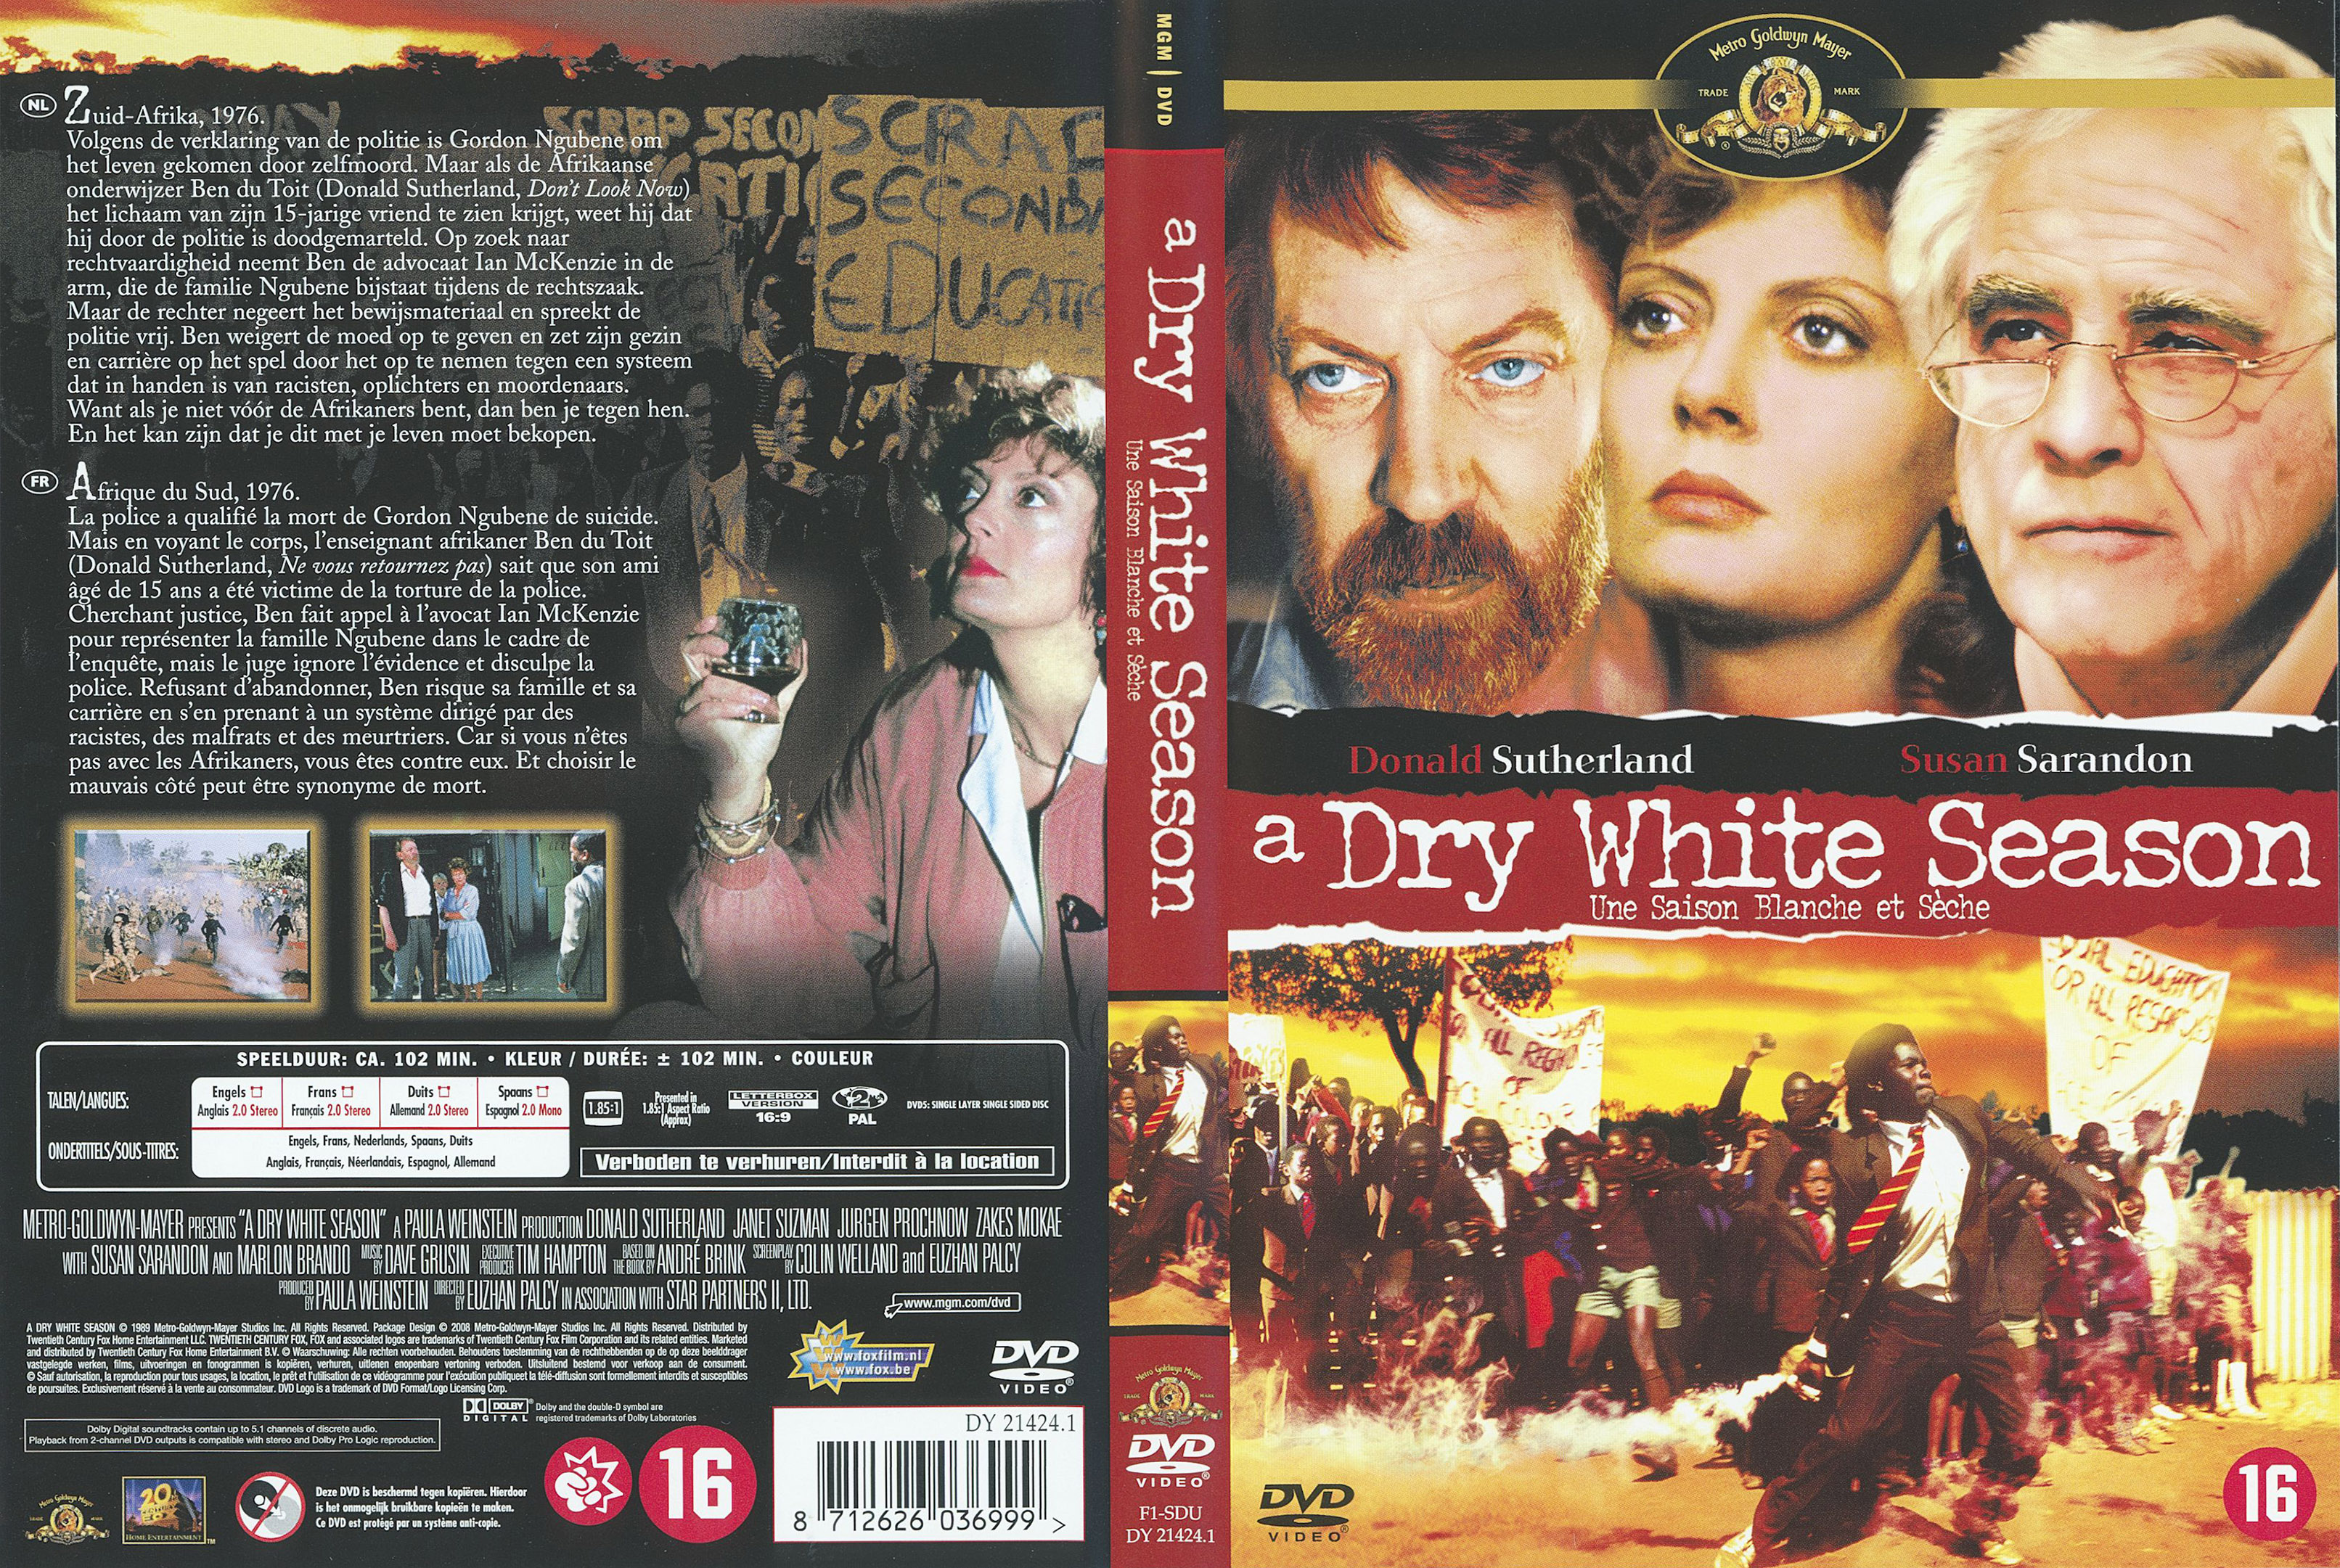 Jaquette DVD Une saison blanche et sche v2